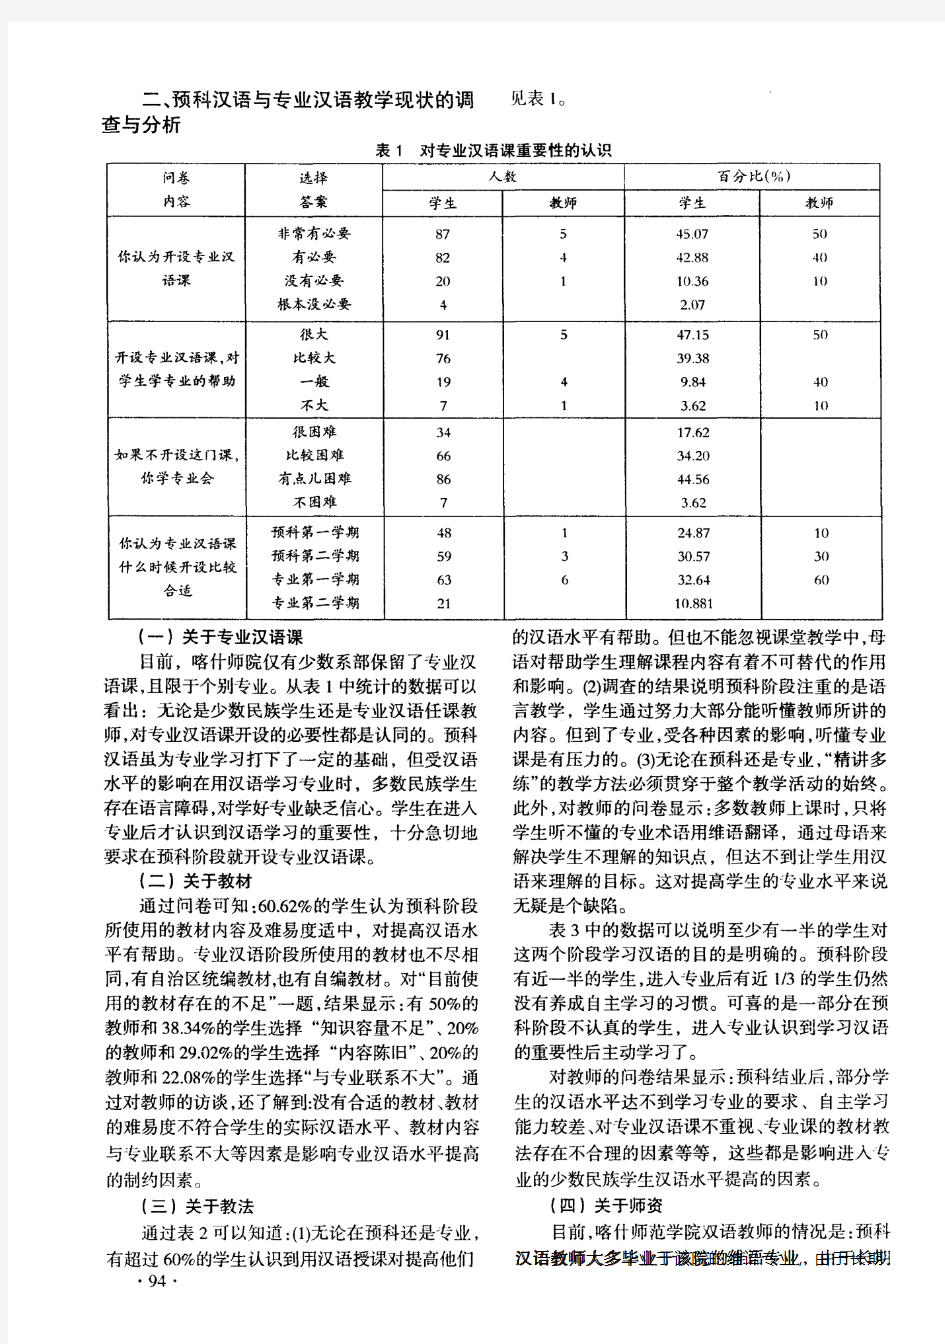 预科汉语与专业汉语衔接的调查和分析——以喀什师范学院为例